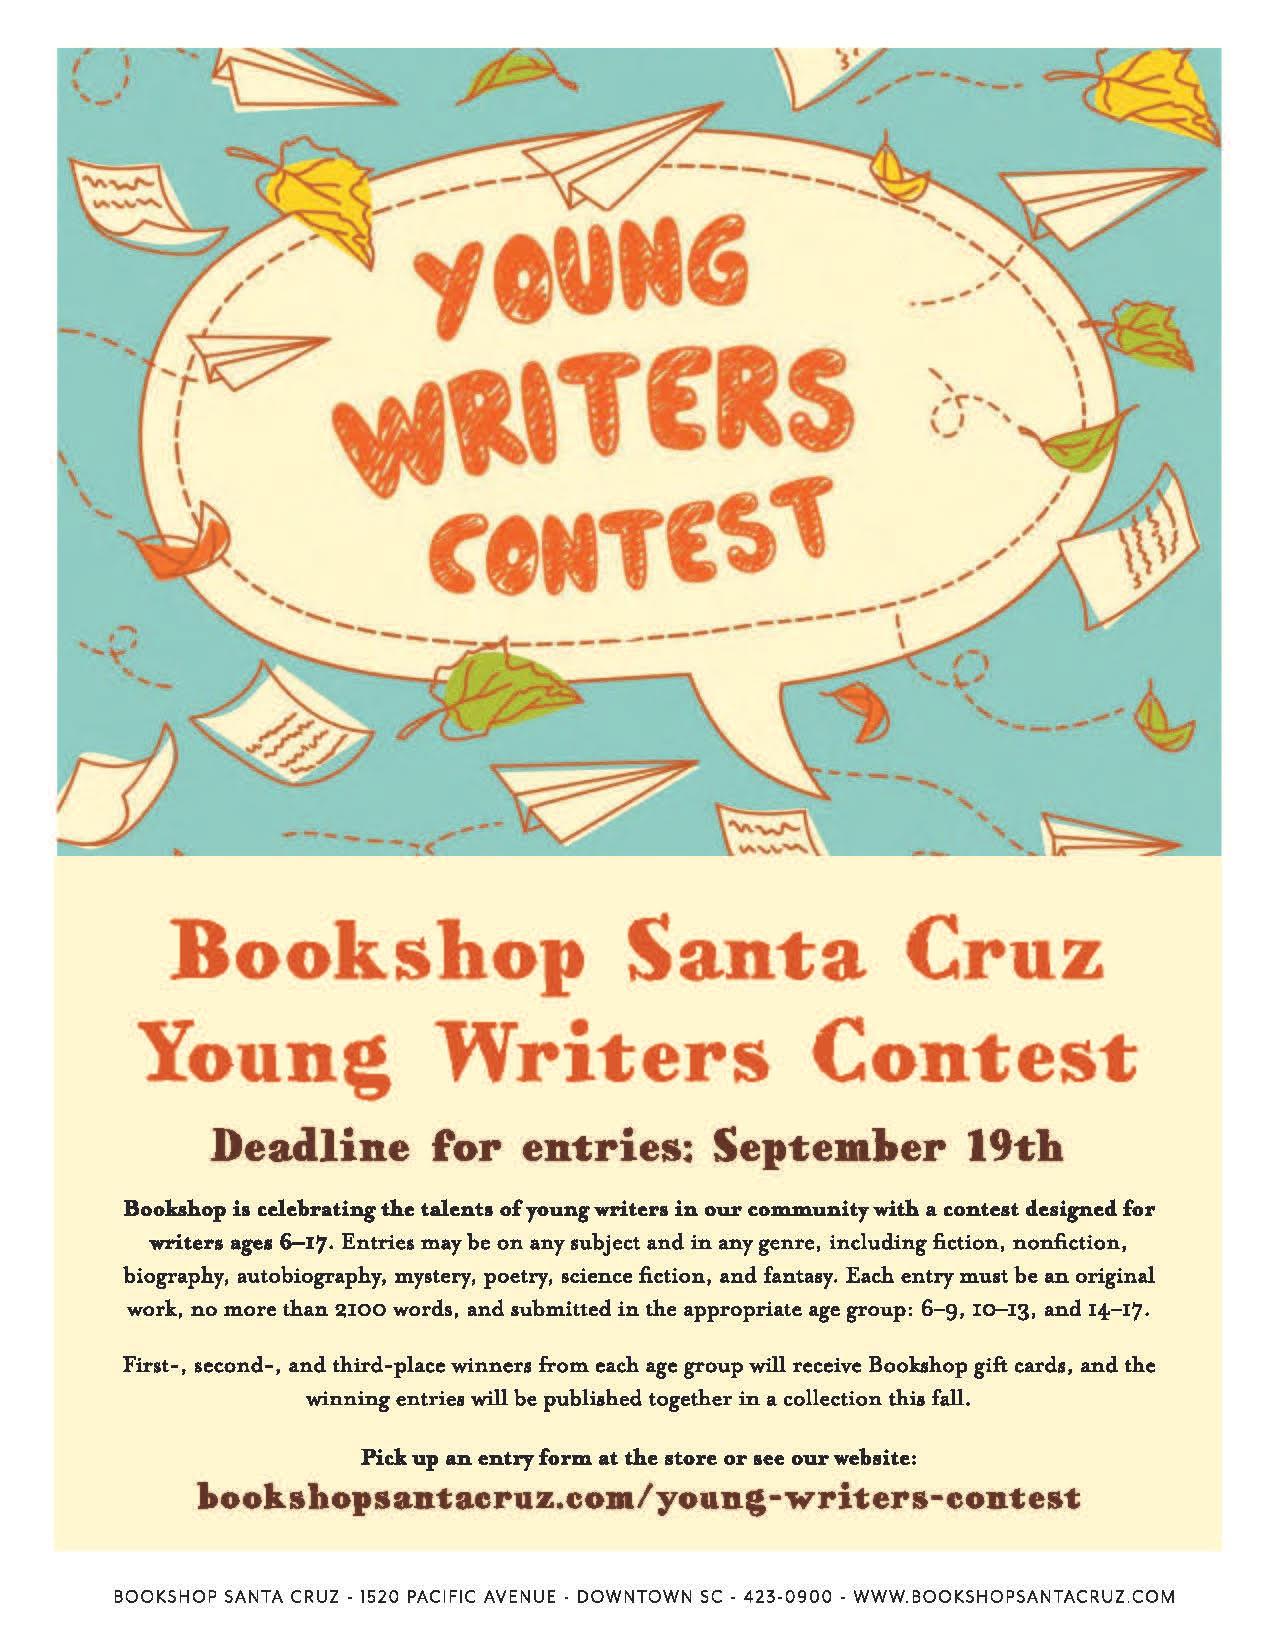 Young writers contest; visit bookshopsantacruz.com/young-writers-contest